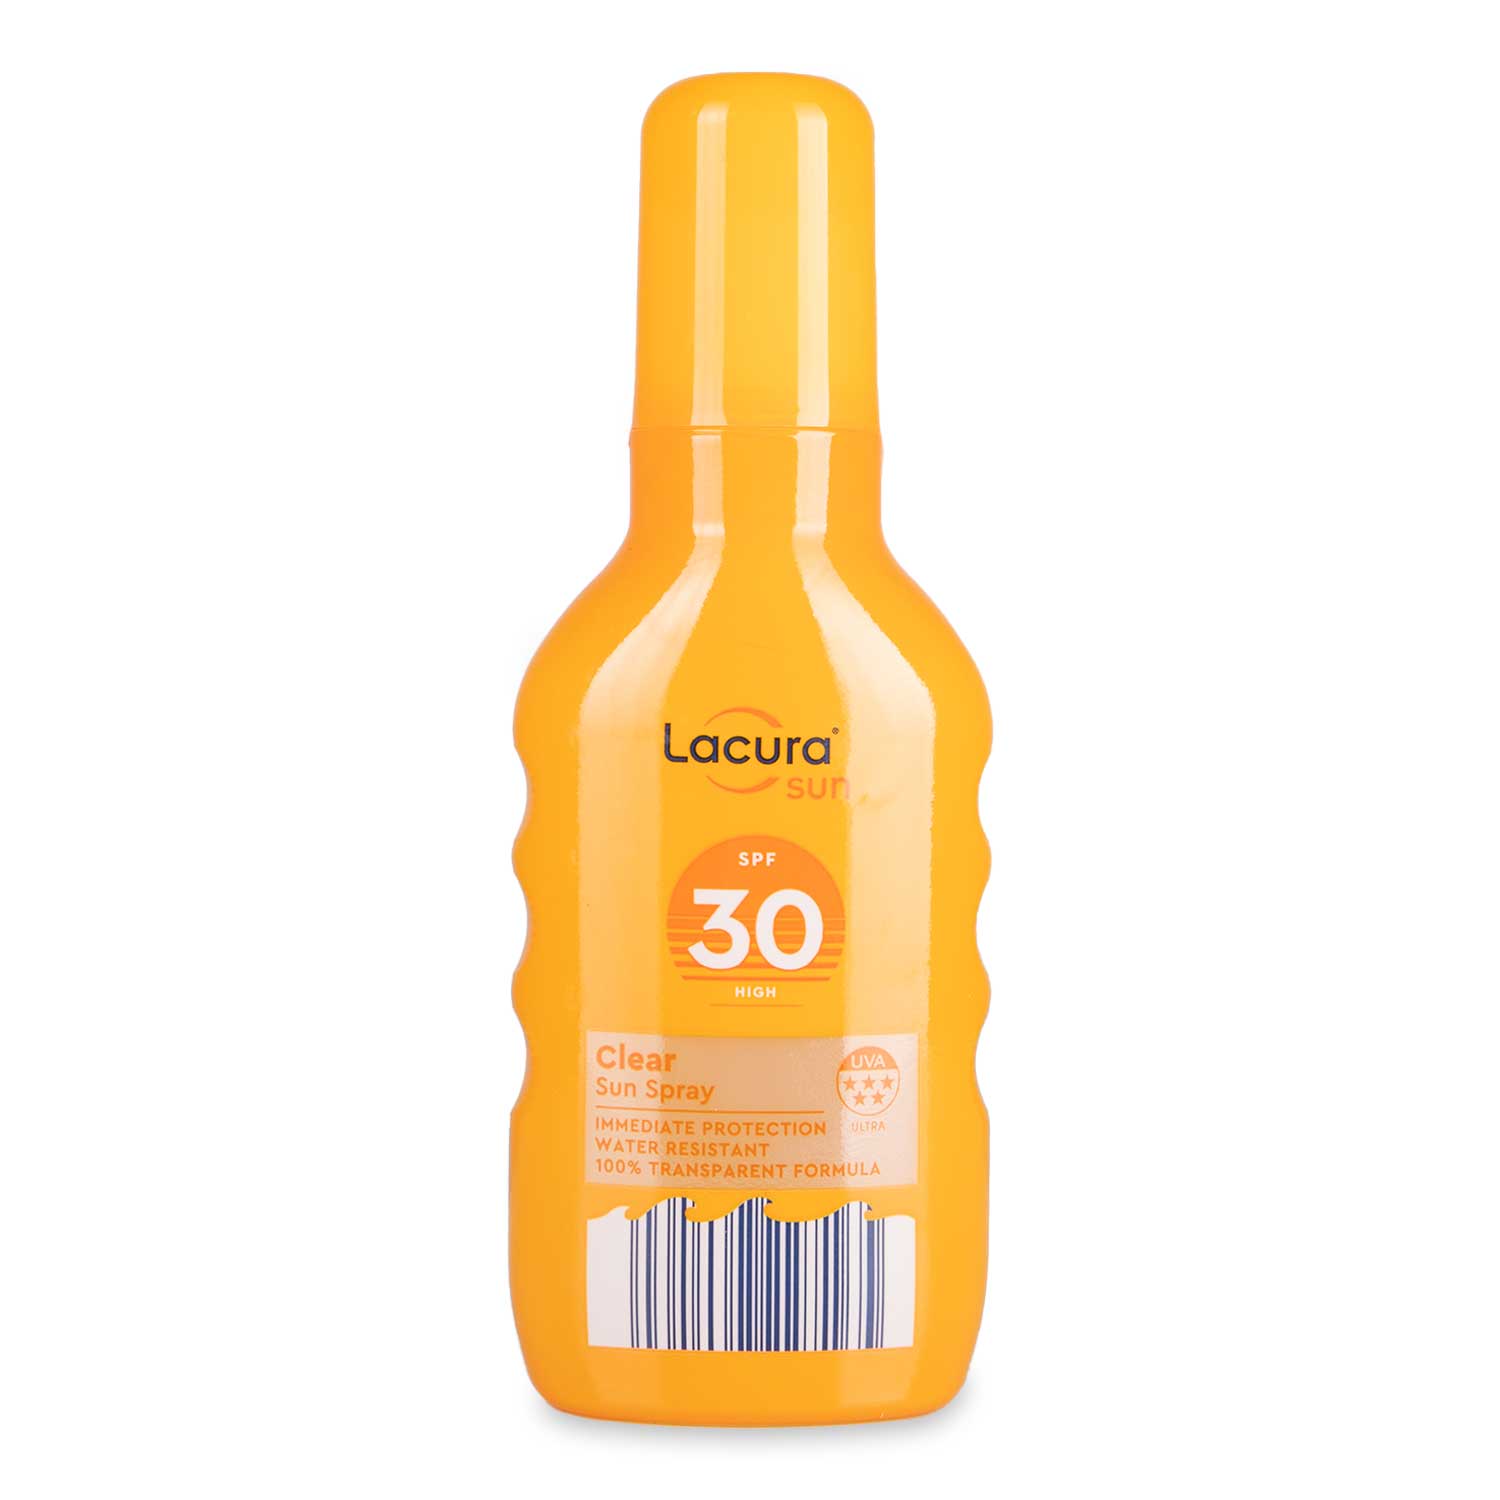 Lacura SPF 30 Clear Sun Spray 200ml